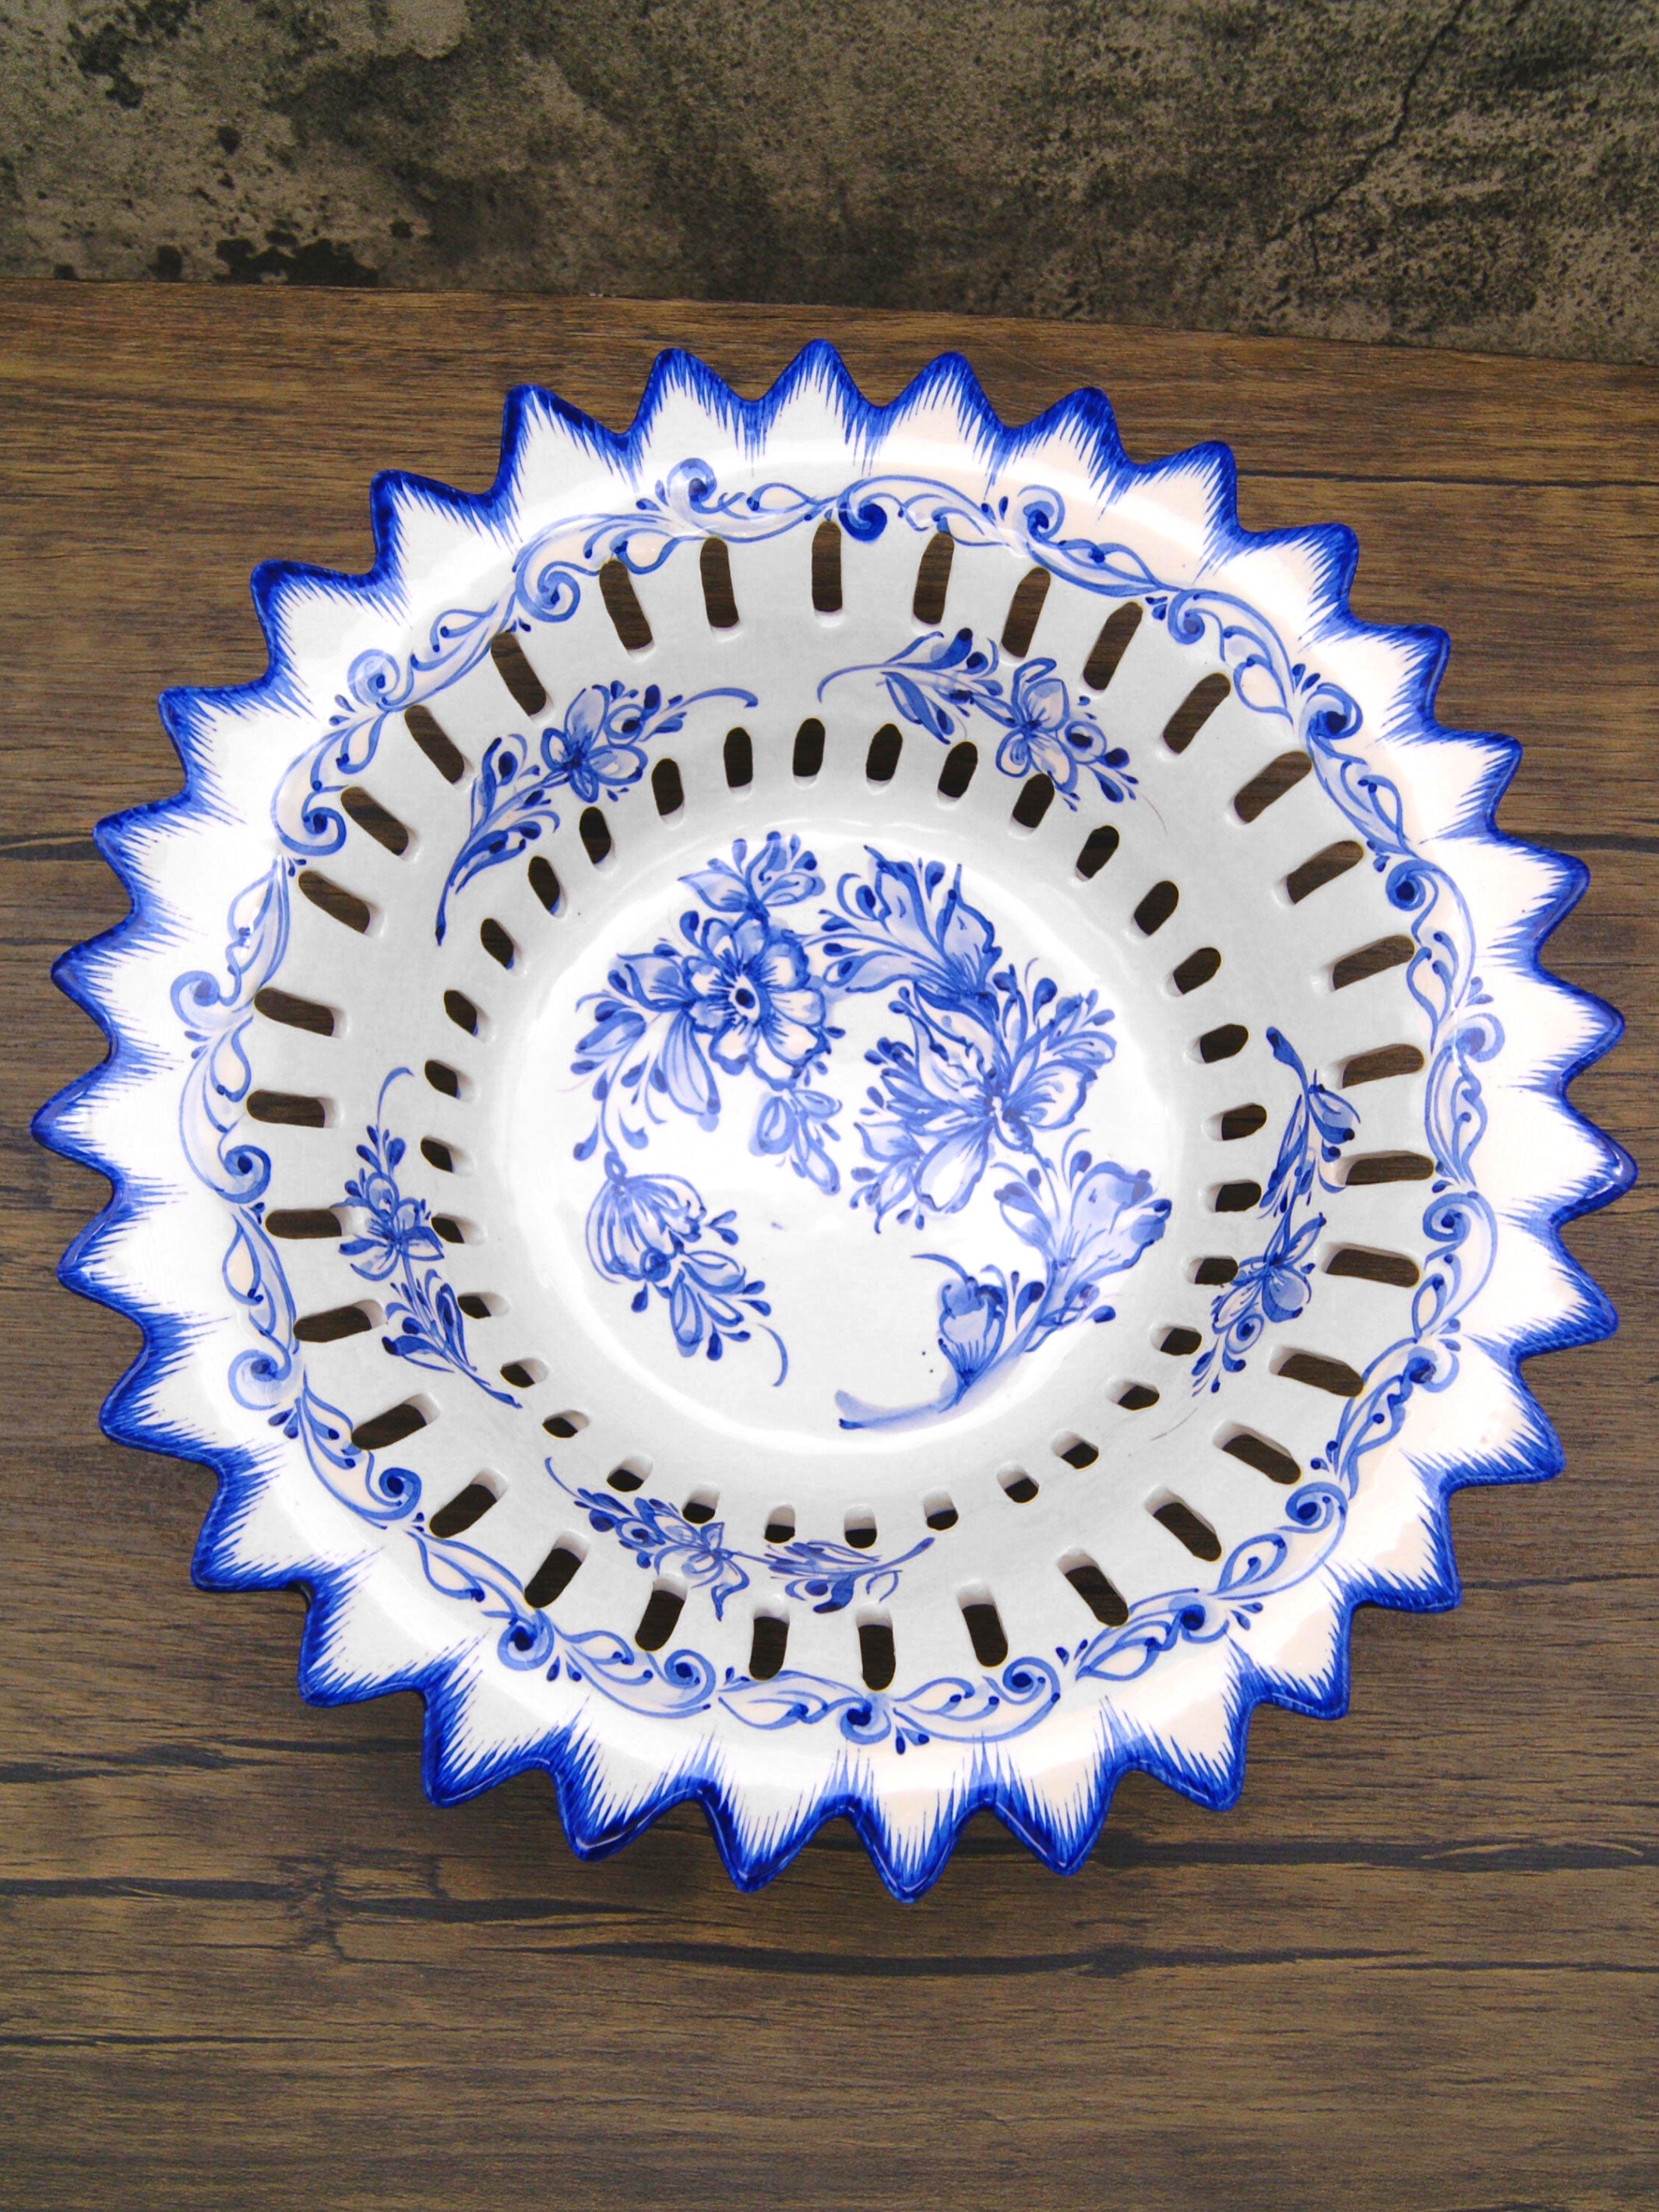 Hand Painted Blue & White Portuguese Pottery Alcobaça Ceramic Fruit Bowl Centerpiece